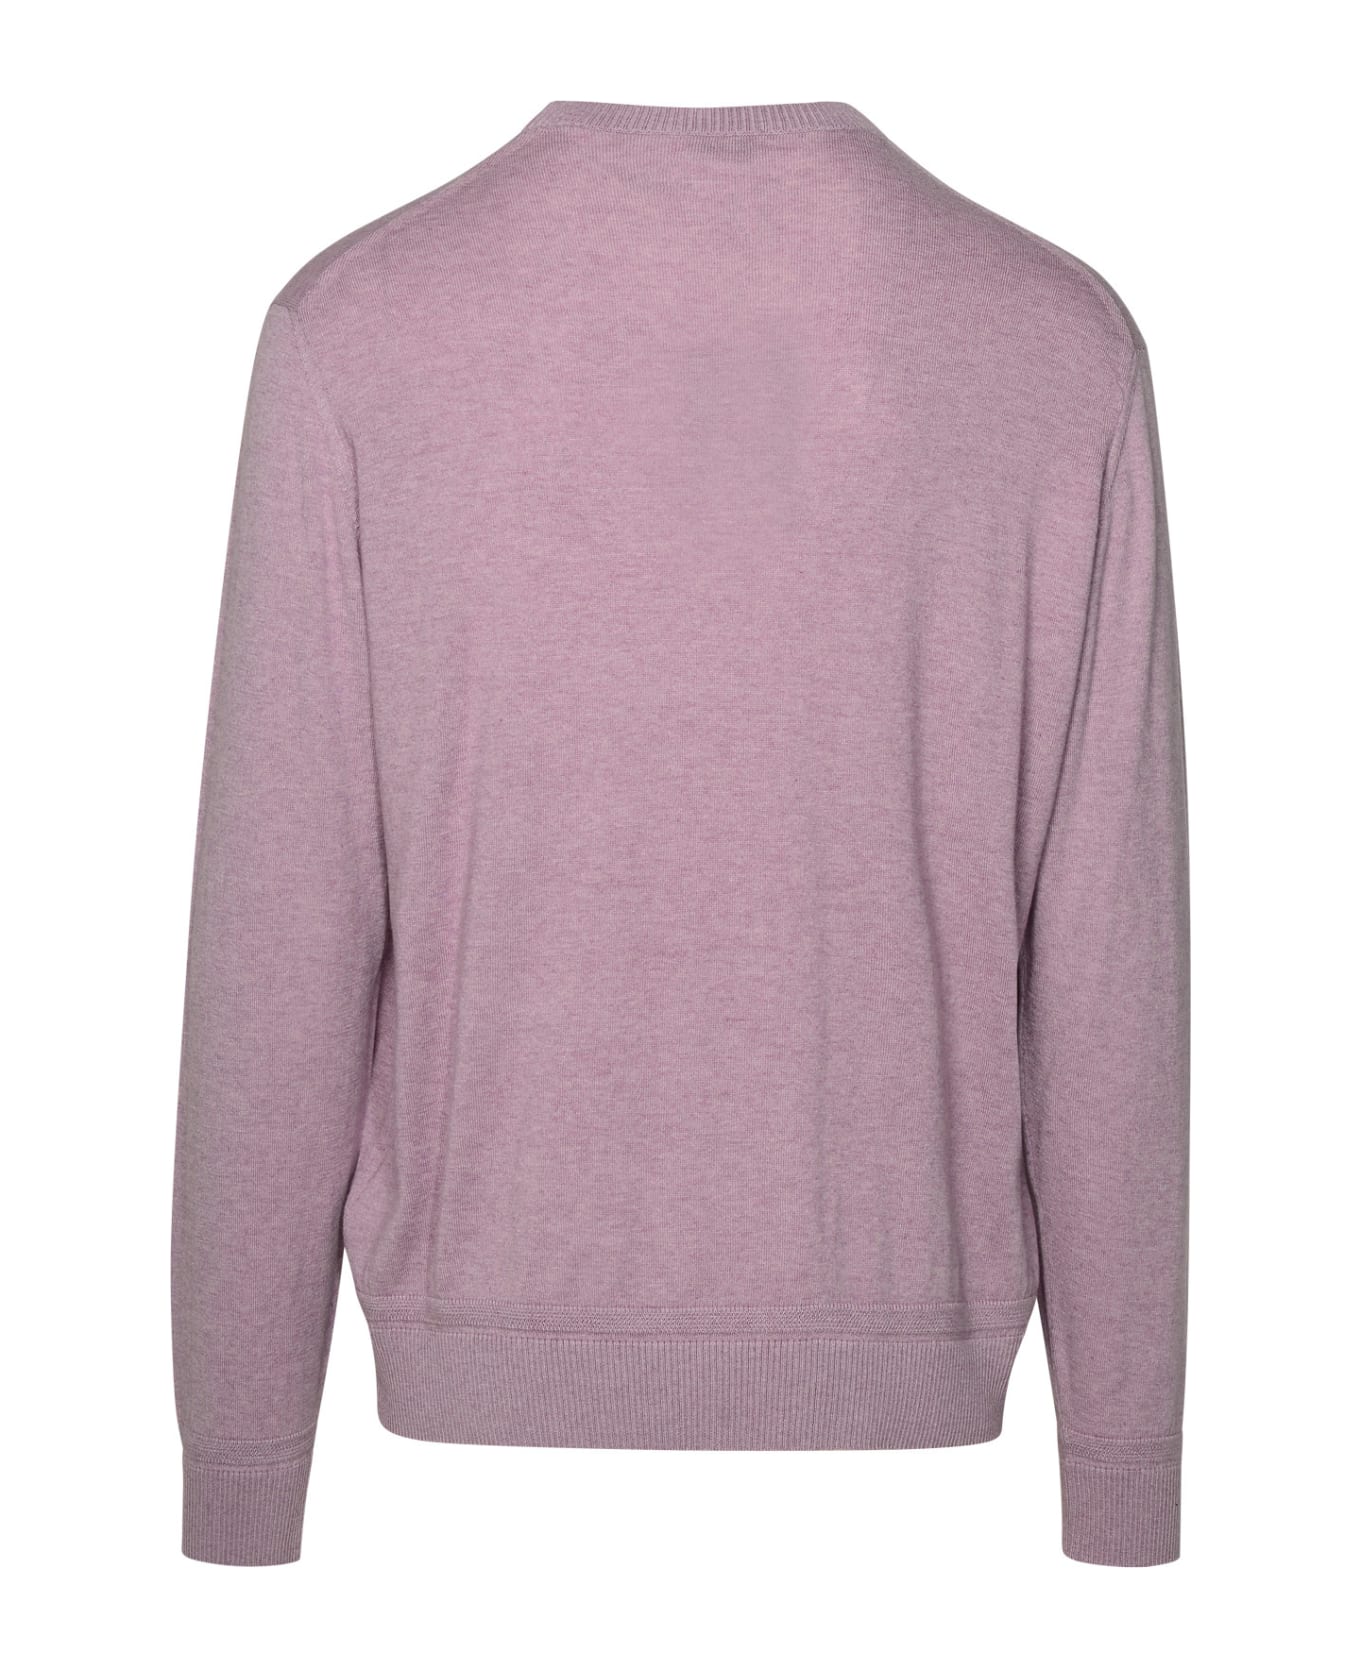 Etro Lilac Cotton Blend Sweater - Lilla